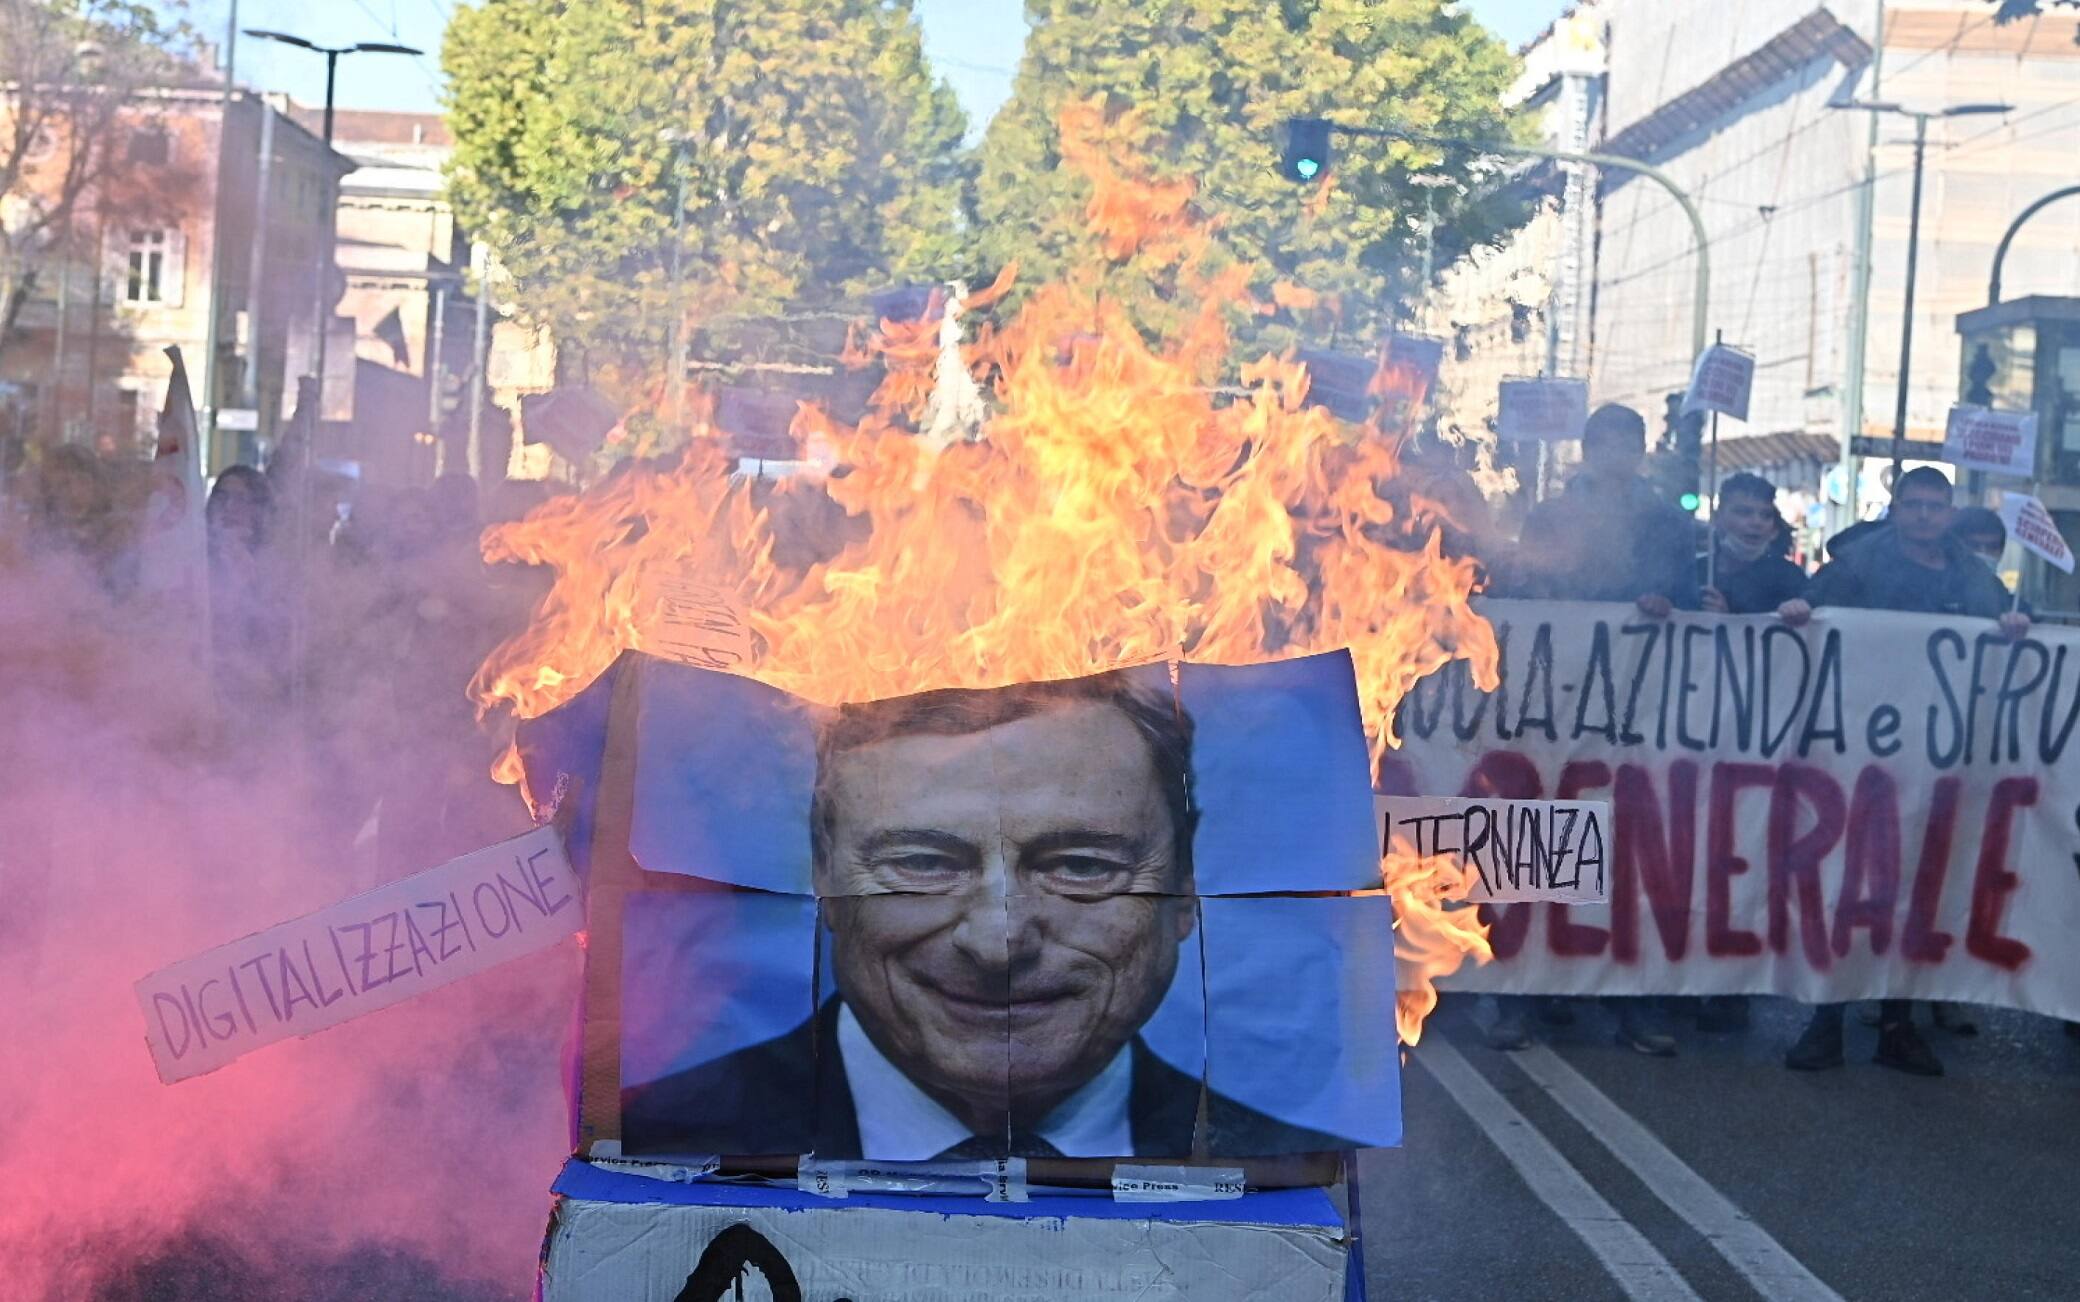 Una gigantografia di Mario Draghi data alle fiamme dagli studenti che stanno manifestando in corteo a Torino, 11 Ottobre 2021. Davanti alla sede del Miur, in corso Vittorio Emanuele, è stata bruciata anche una bandiera dell'Europa, Torino, 11 ottobre 2021 ANSA/ALESSANDRO DI MARCO